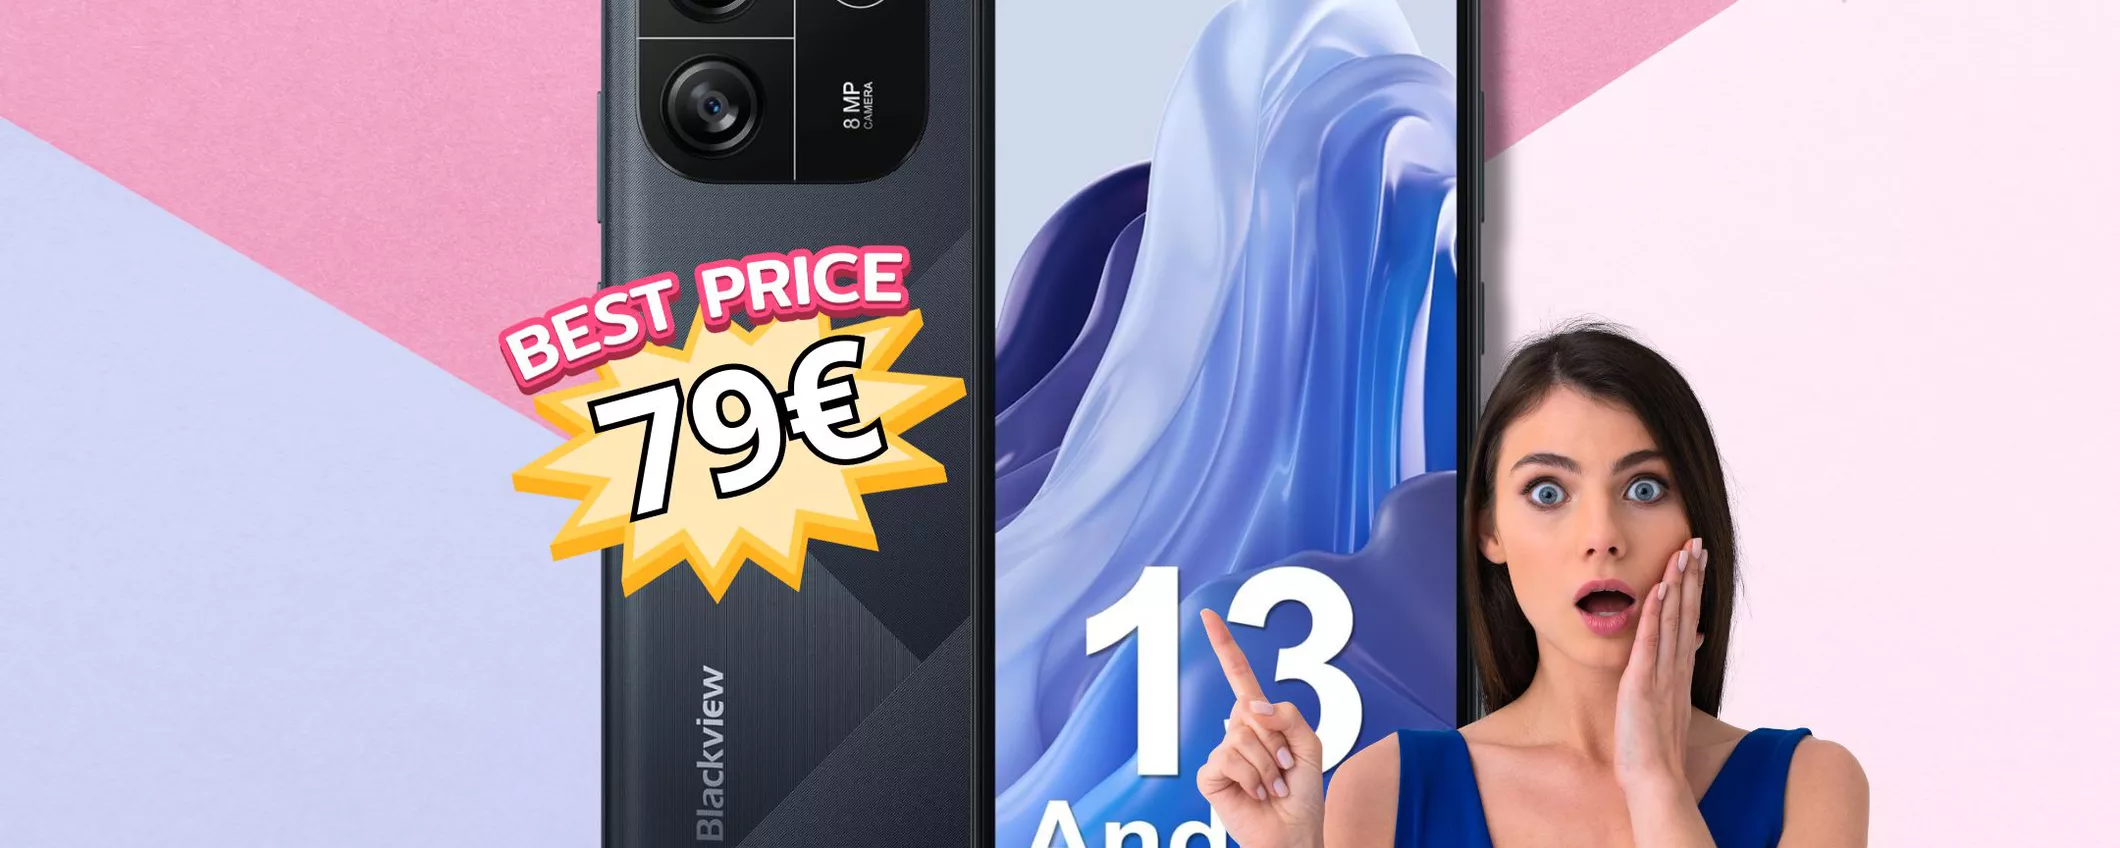 CHE BOMBA: solo 79€ per lo smartphone Blackview Wave6C su Amazon!